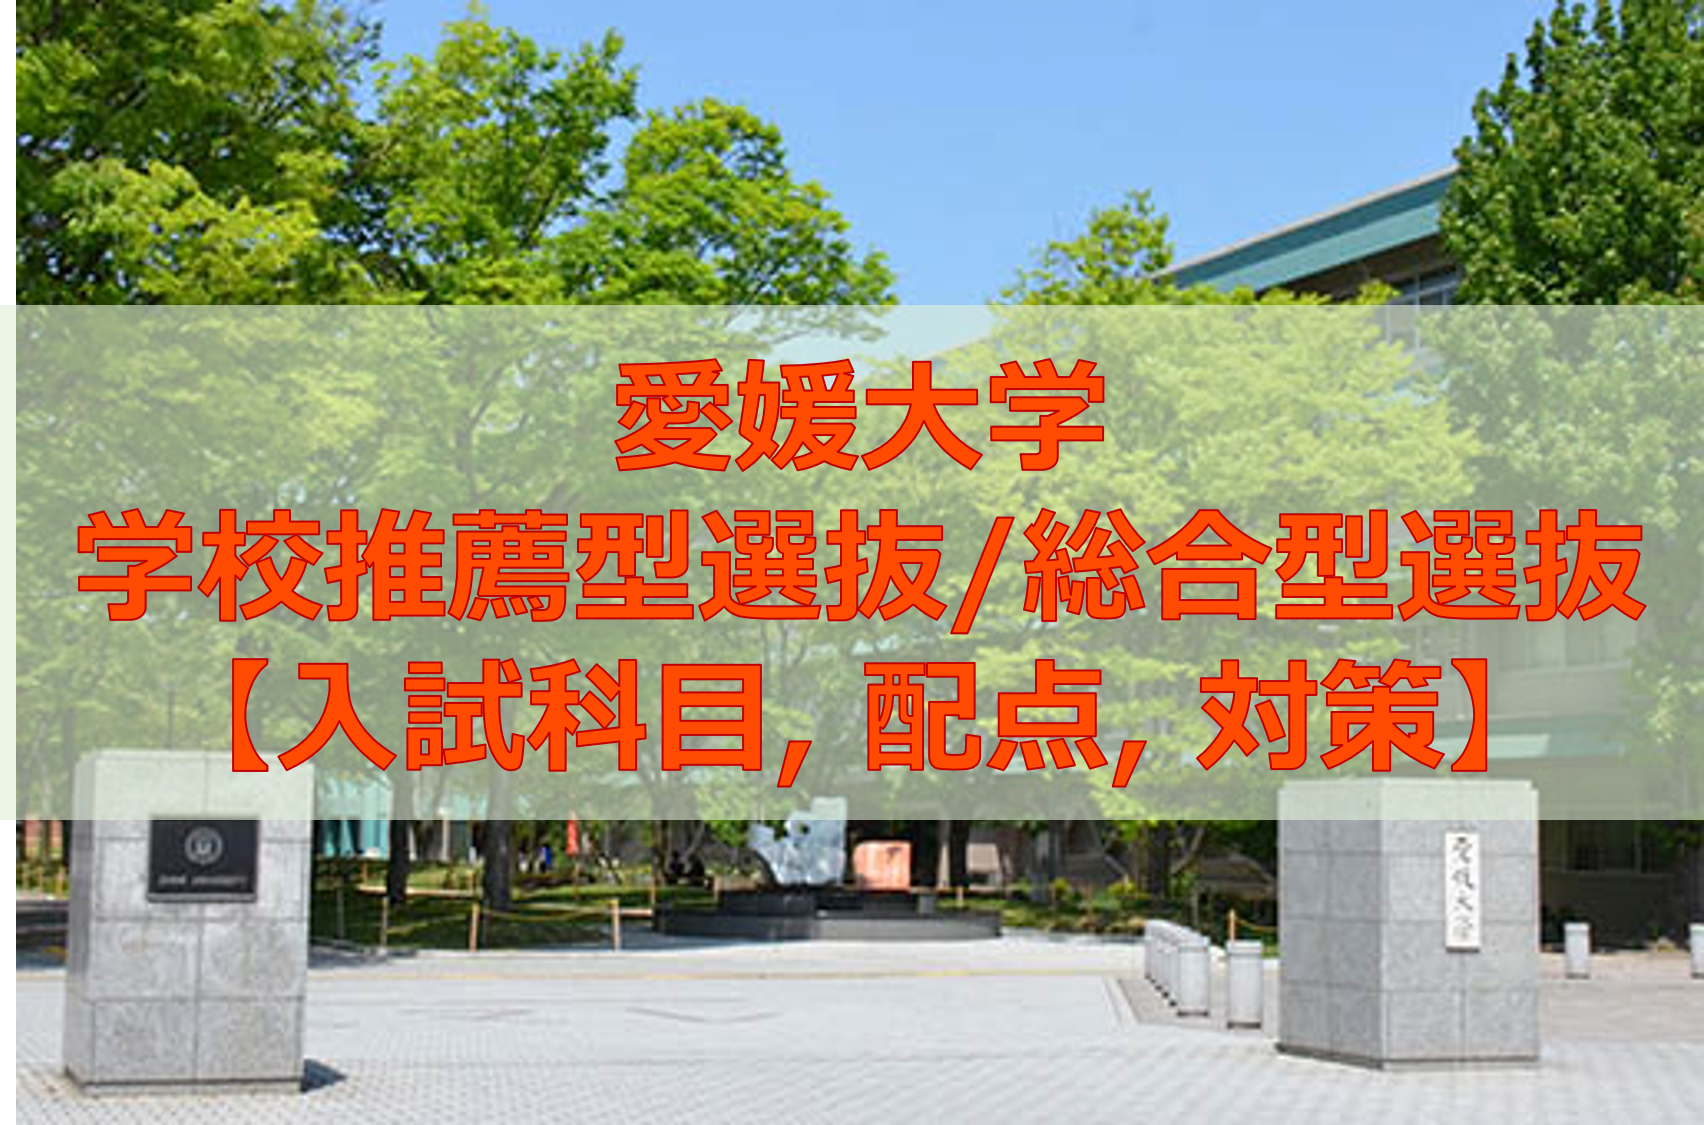 推薦 総合型選抜で愛媛大学を目指すなら 入試科目 配点 対策を解説 愛大研 公式ブログ